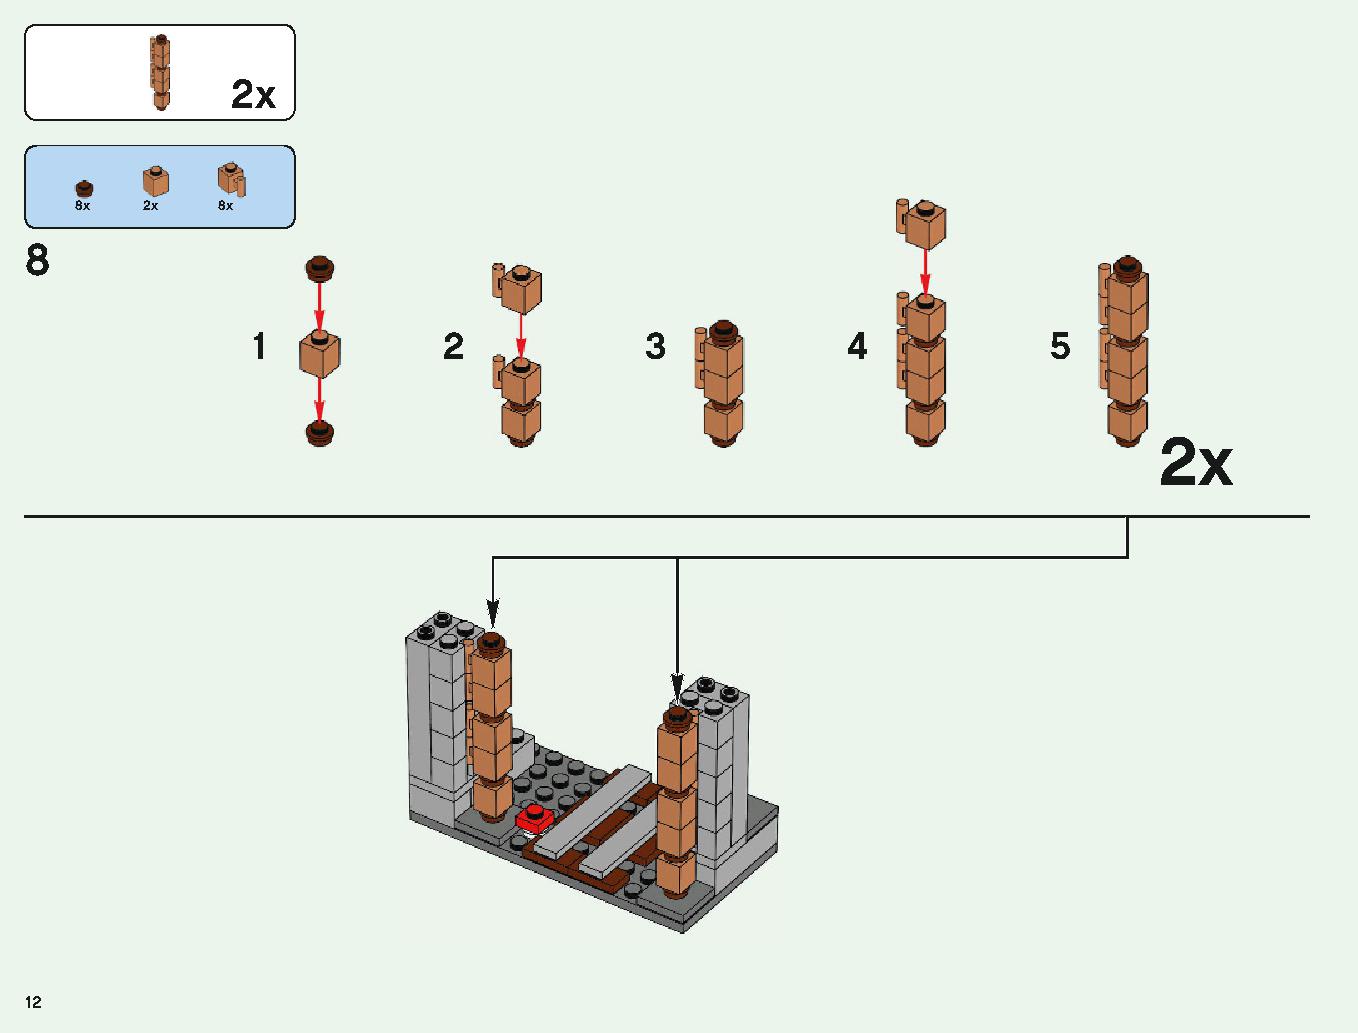 ベッドロックの冒険 21147 レゴの商品情報 レゴの説明書・組立方法 12 page